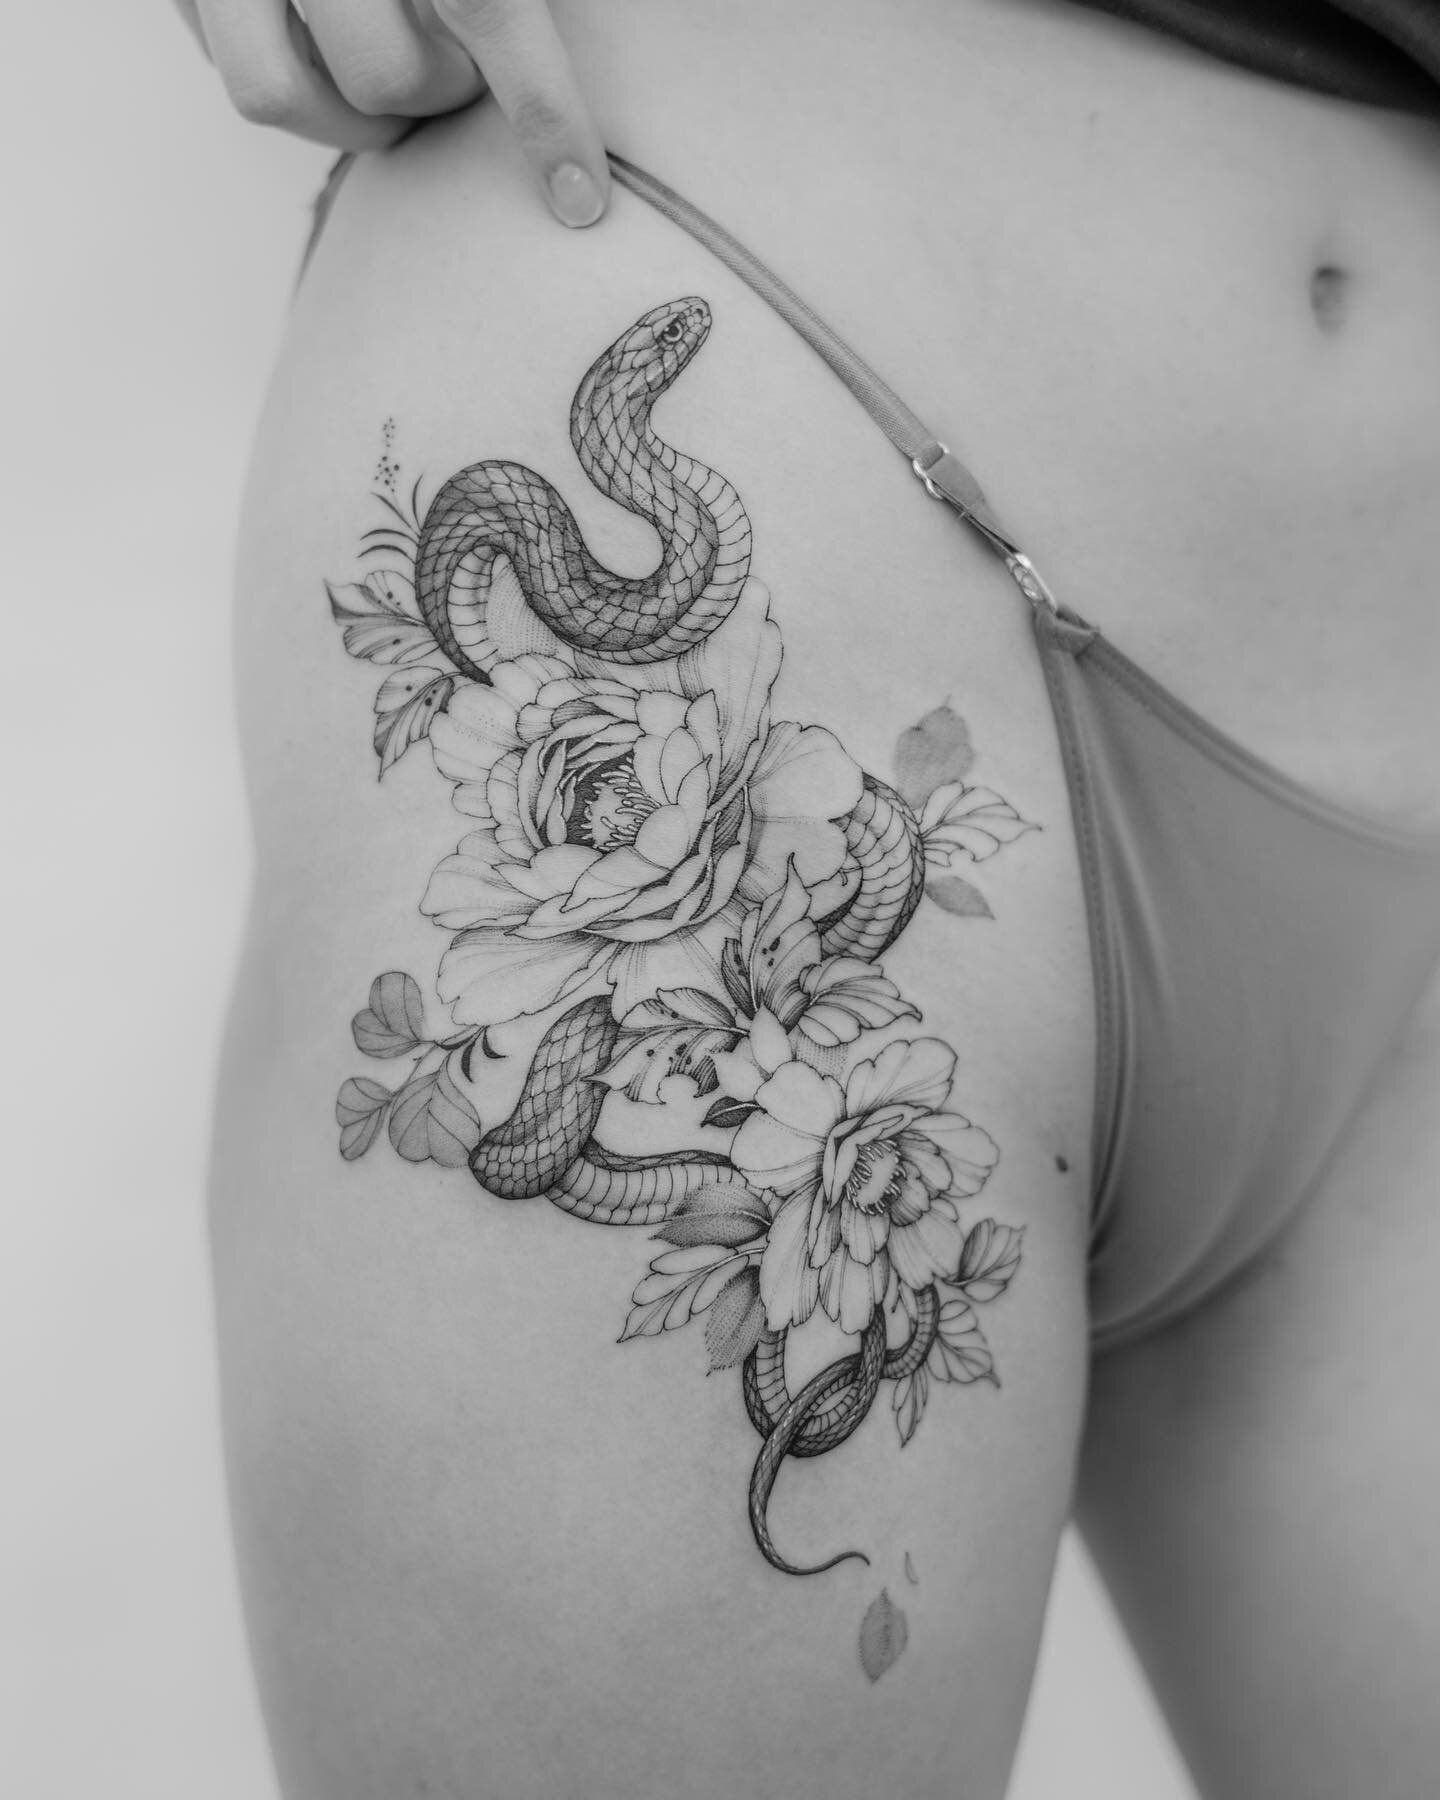 Snake for Leanna 🐍 
.
.
.
.

 #tattoo #tattoos #finelinetattoos #frehandtattoo #tattoartist #finelinetattoo #fineline #torontotattoo #torontotattoos #torontotattooartist #floral #floraltattoos #flower tattoo #montrealtattoo #peony #peonytattoo #rose